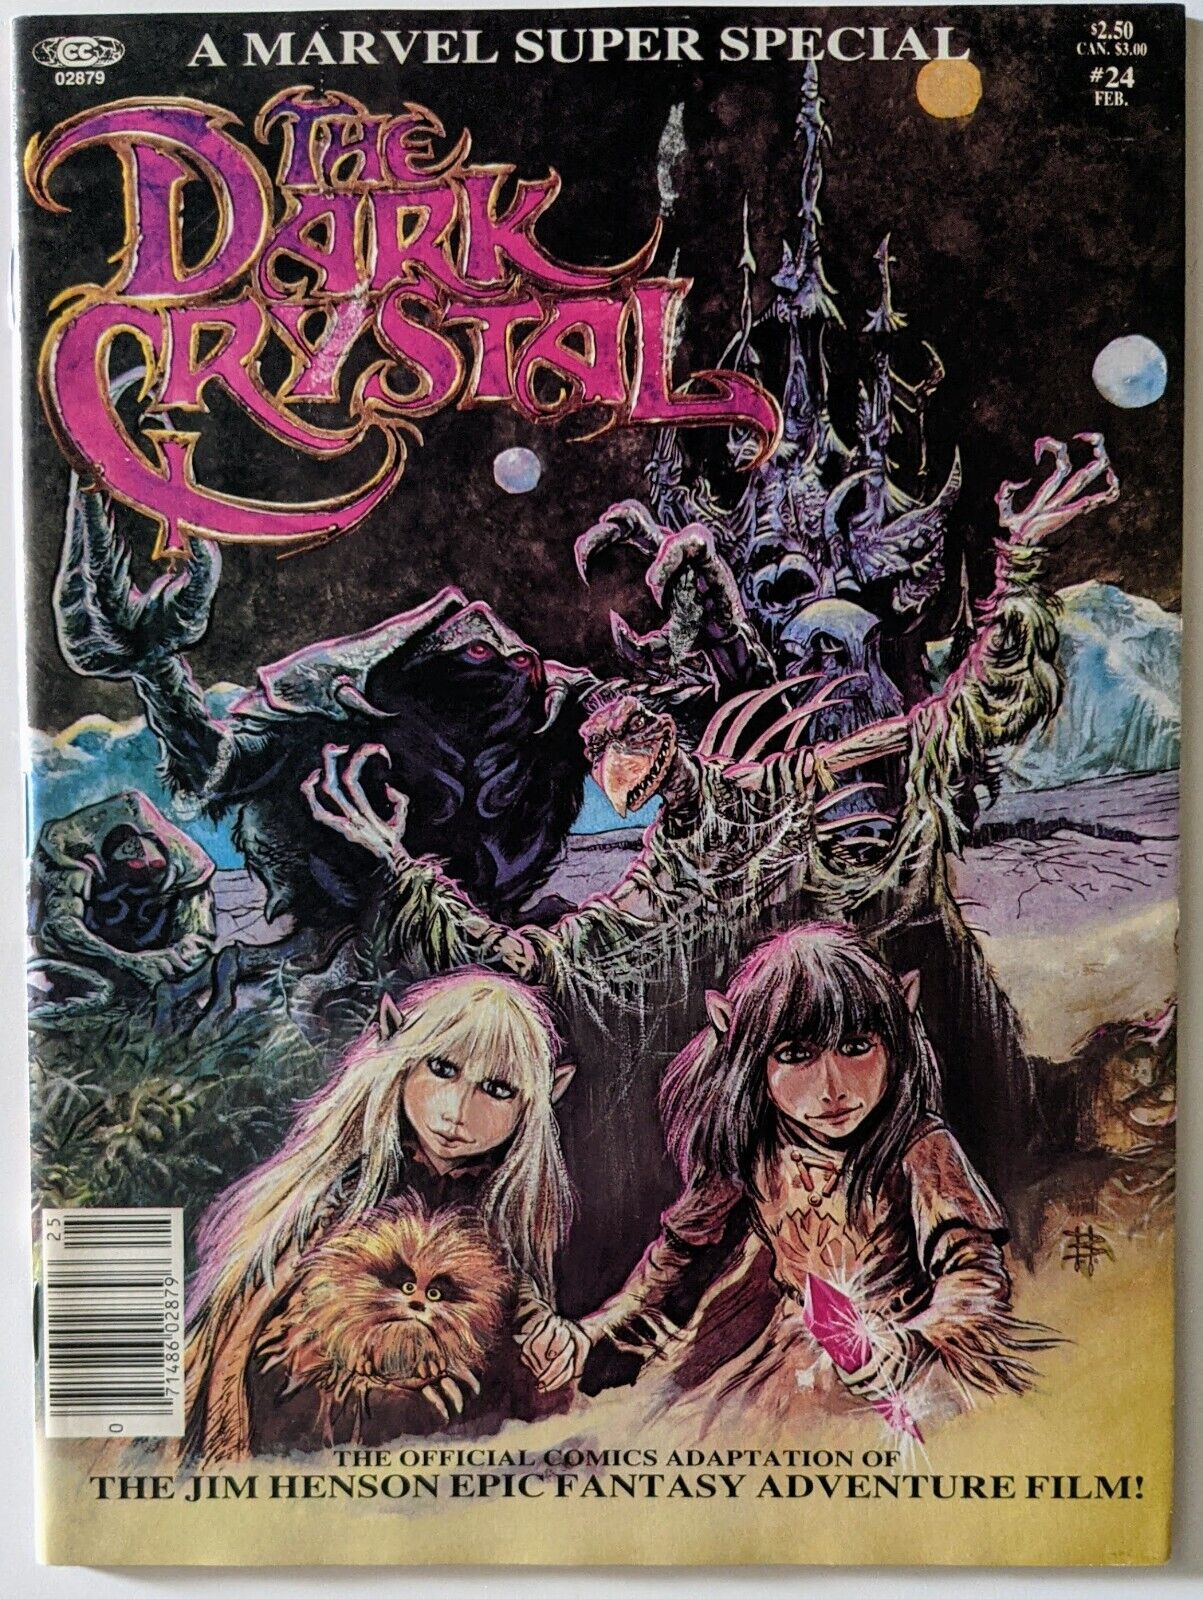 VINTAGE 1982 Marvel Super Special #24 Dark Crystal Movie Adaptation